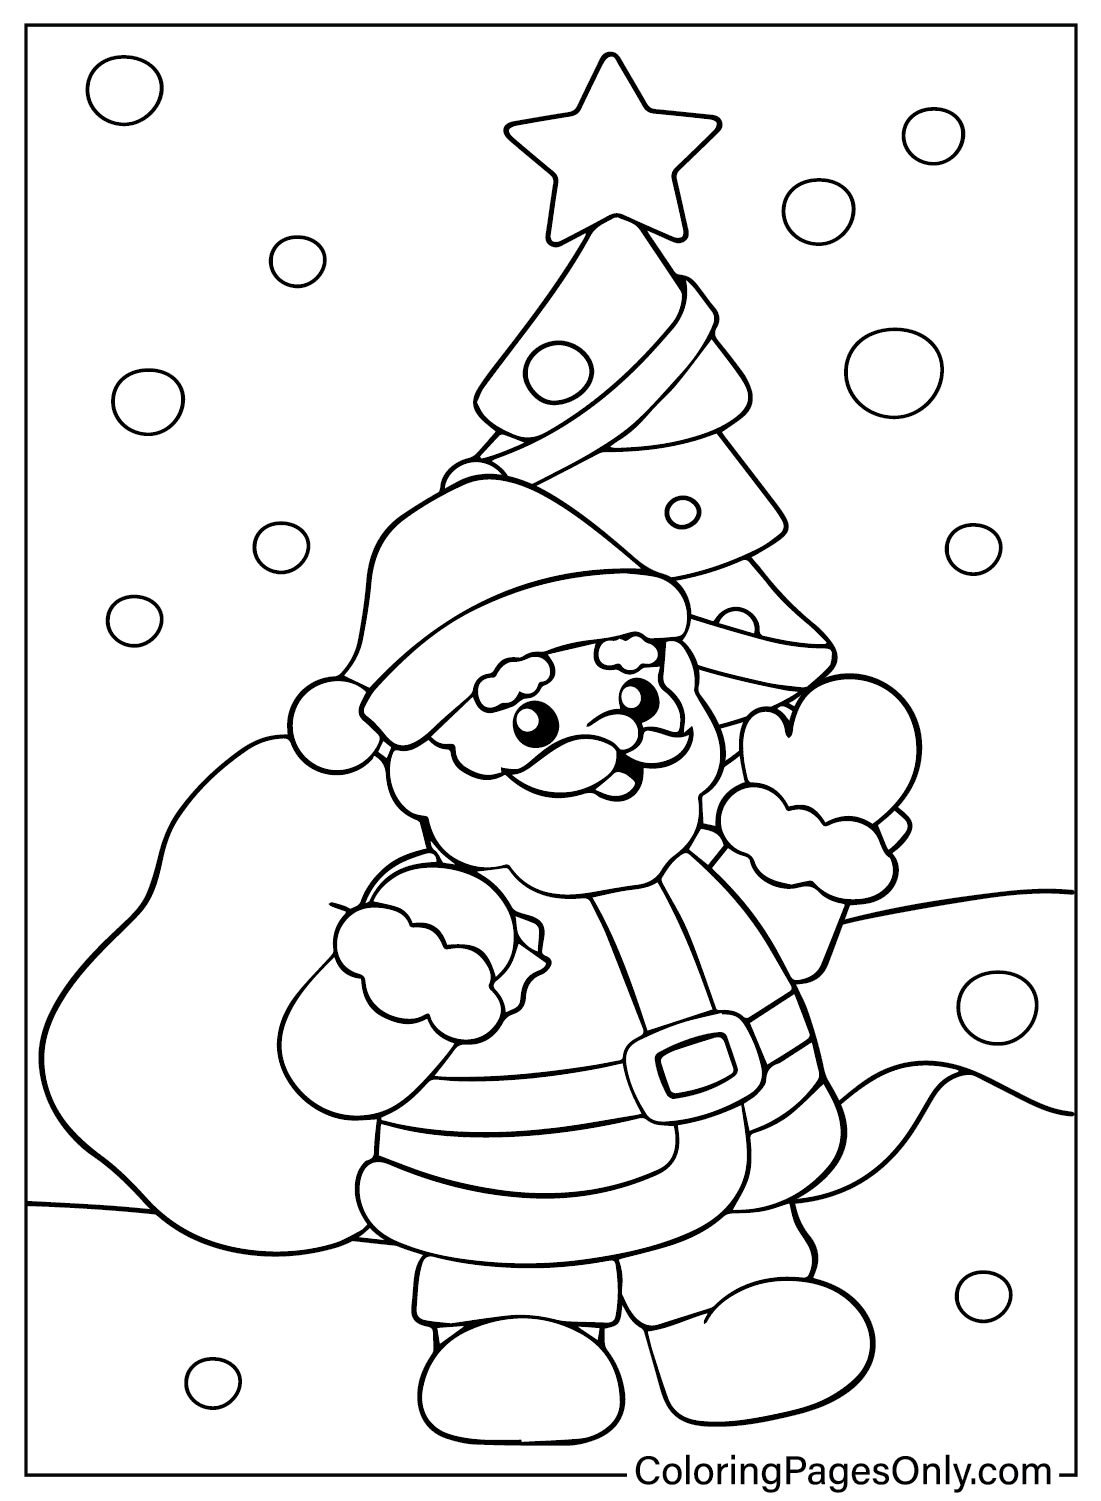 Free Santa Claus Coloring Page from Santa Claus